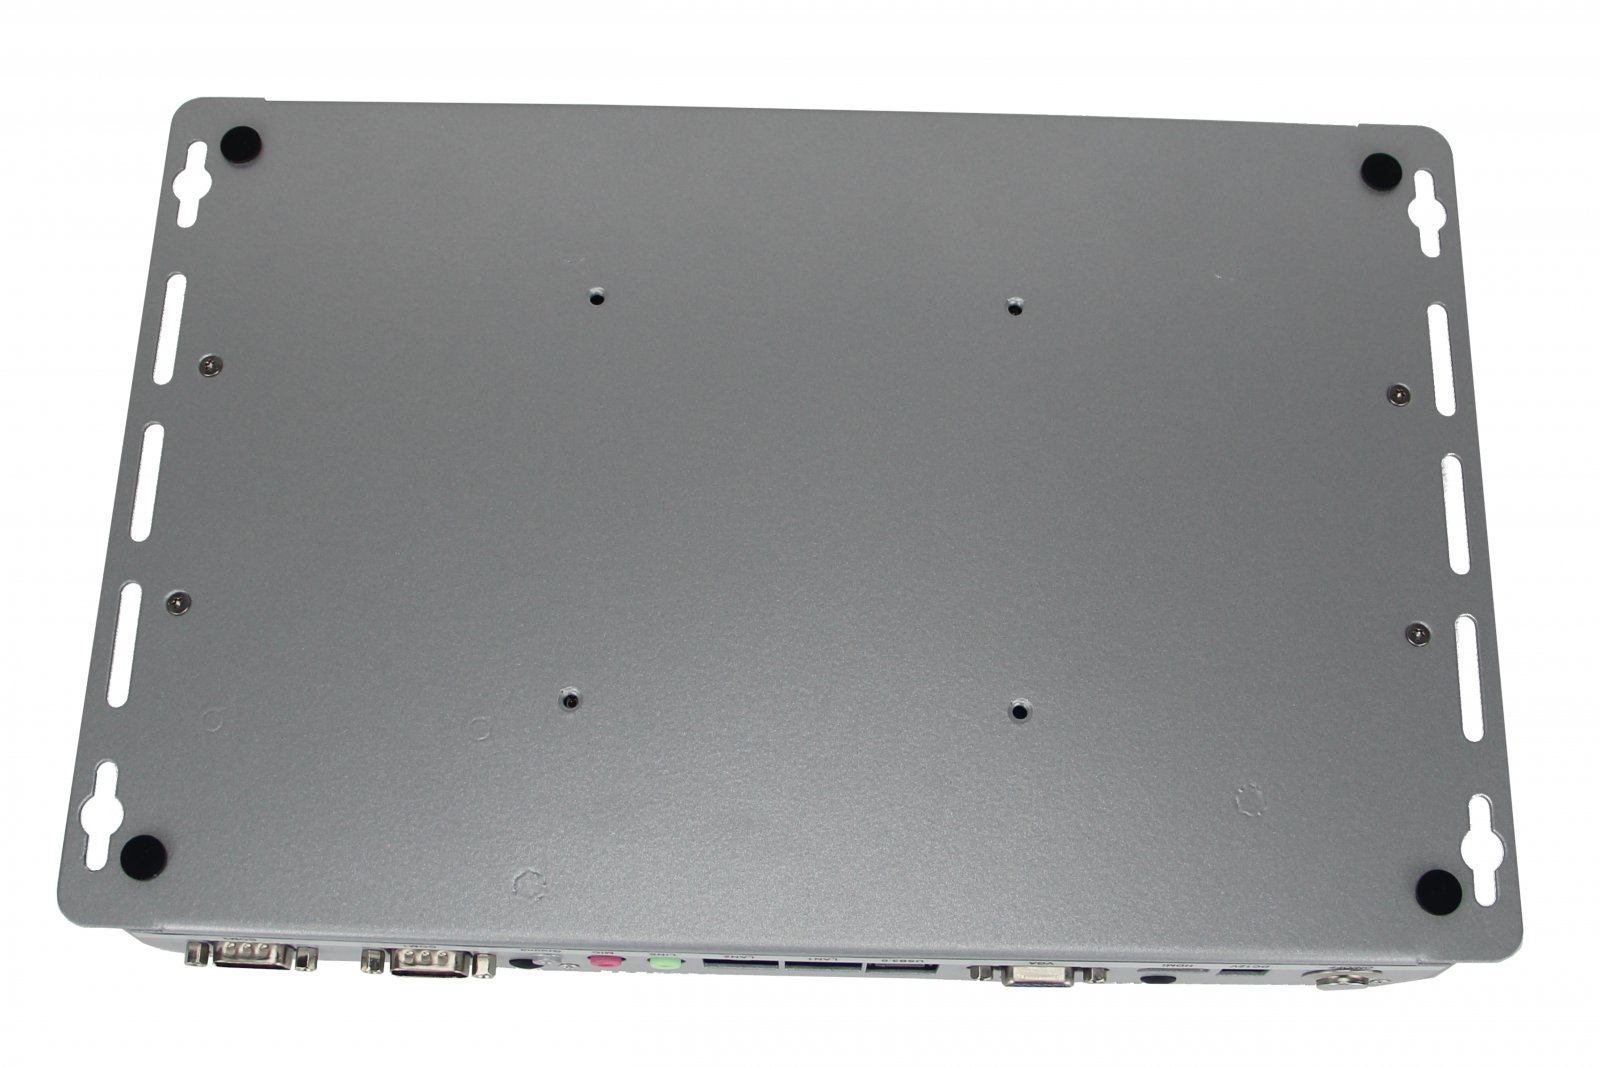 Minimaker BBPC-K03 (i3-6006U) - Mini industrial computer (Inter Core i3 processor) 2x LAN RJ45 and 6 COM serial ports